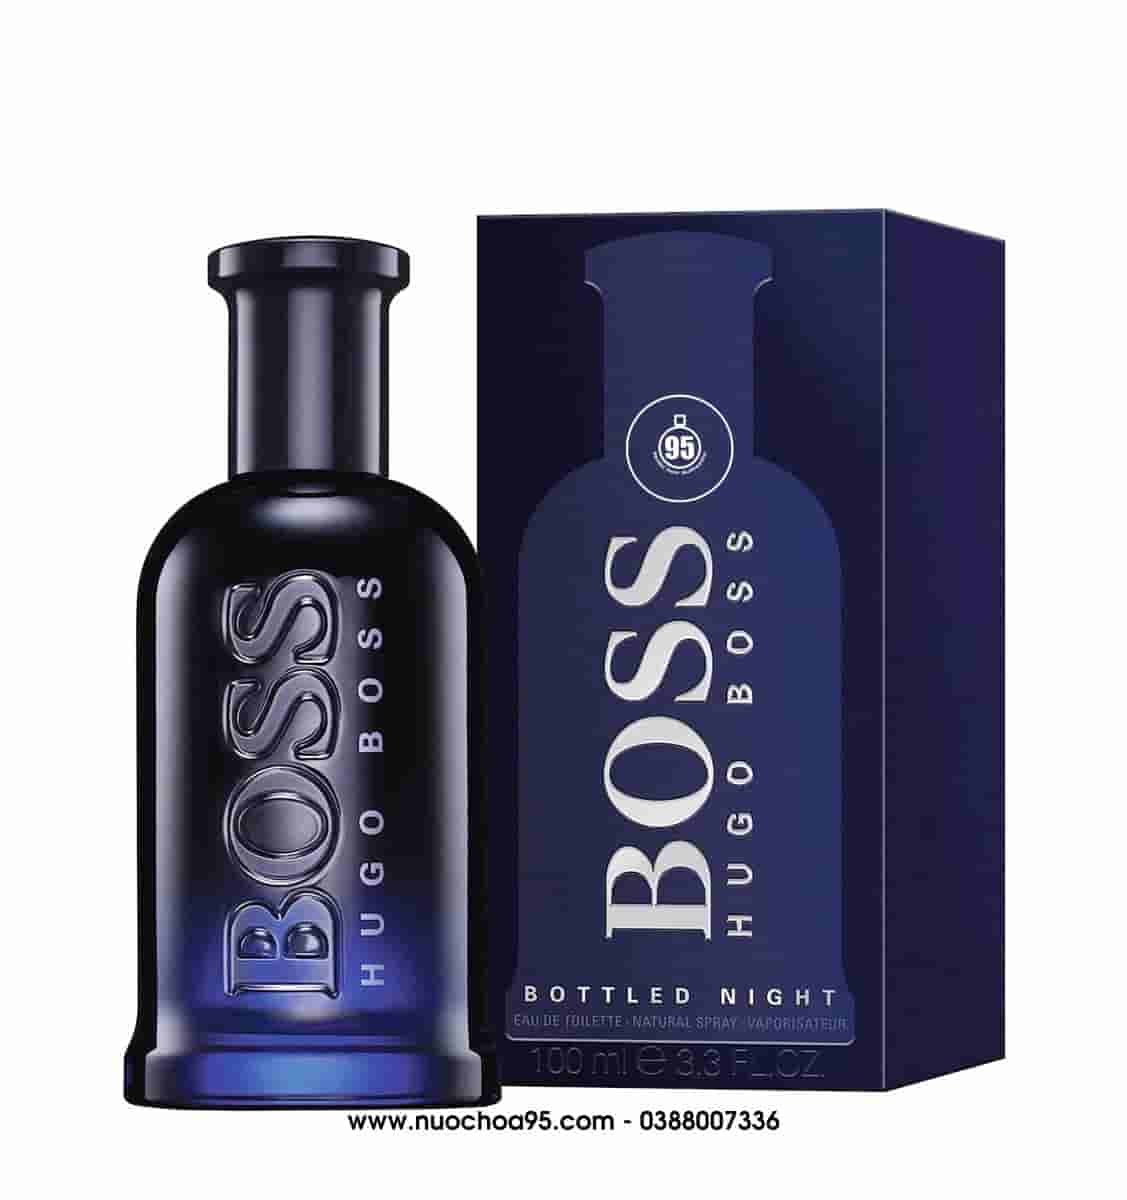 Nước hoa Hugo Boss Bottled Night 